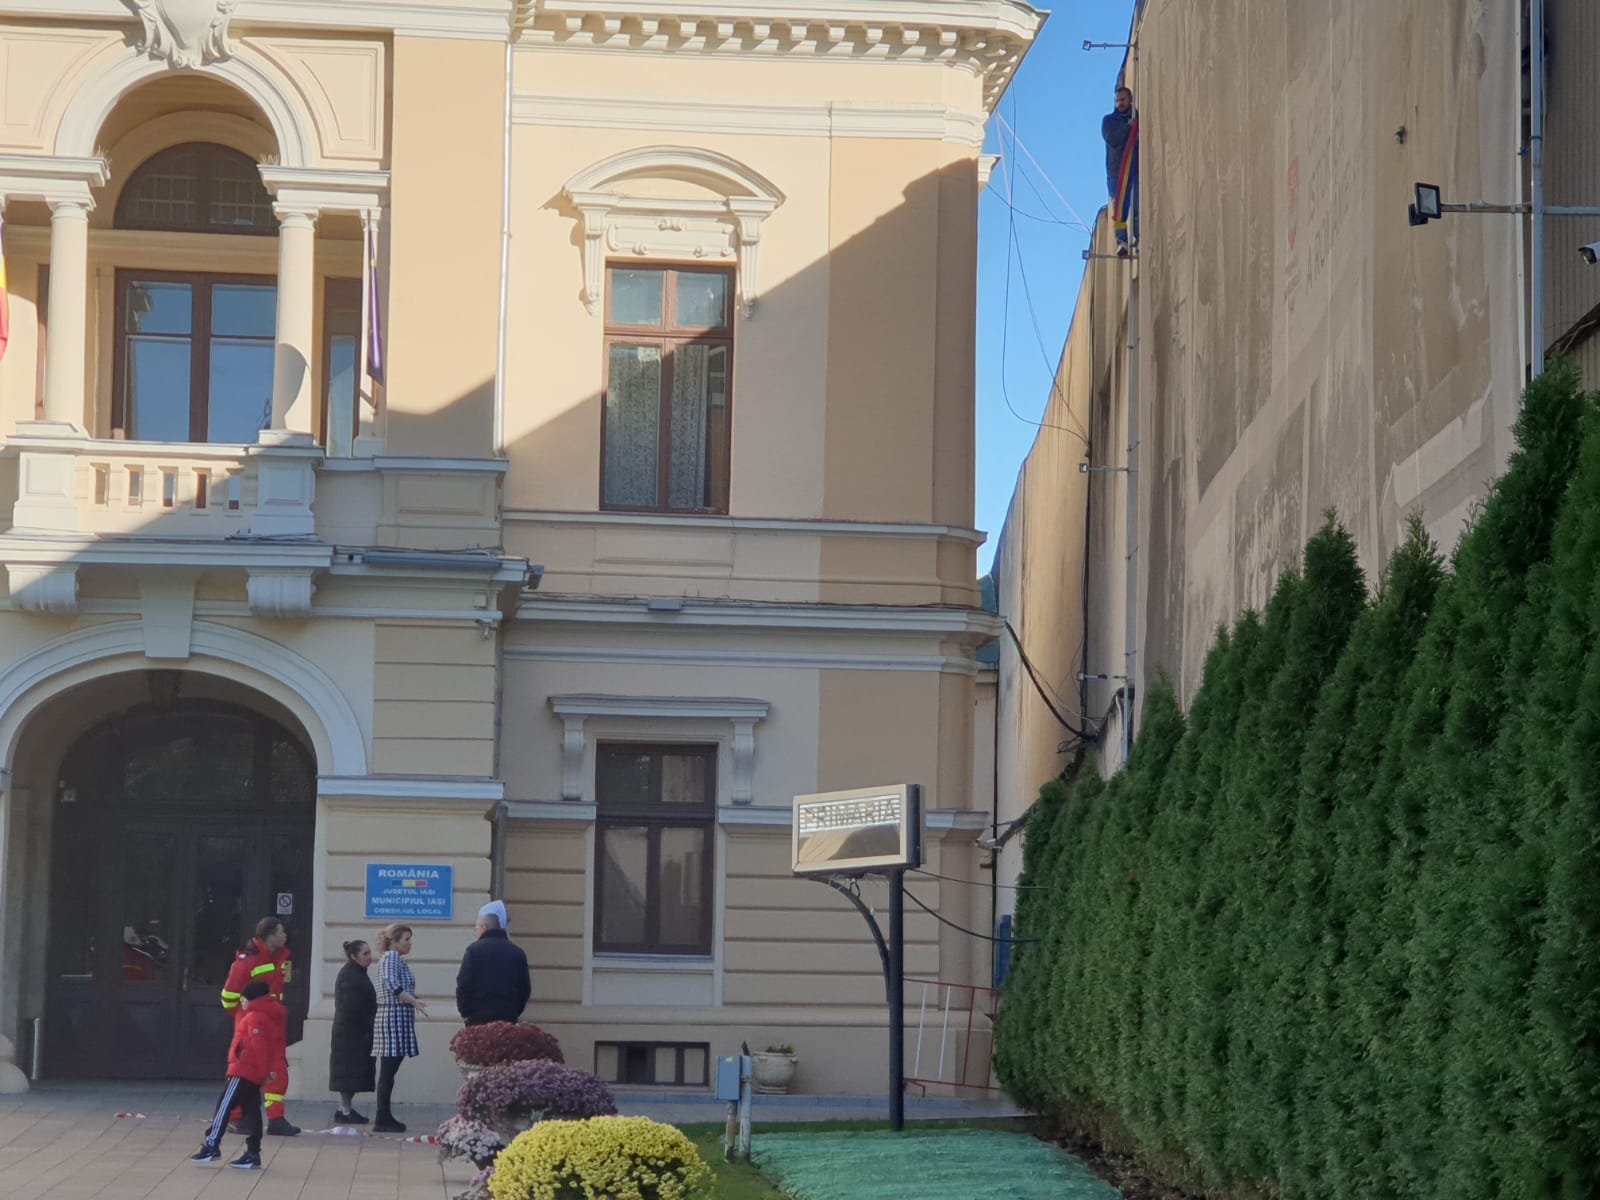  Un bărbat s-a urcat pe o clădire de lângă primăria municipiului Iaşi (UPDATE)